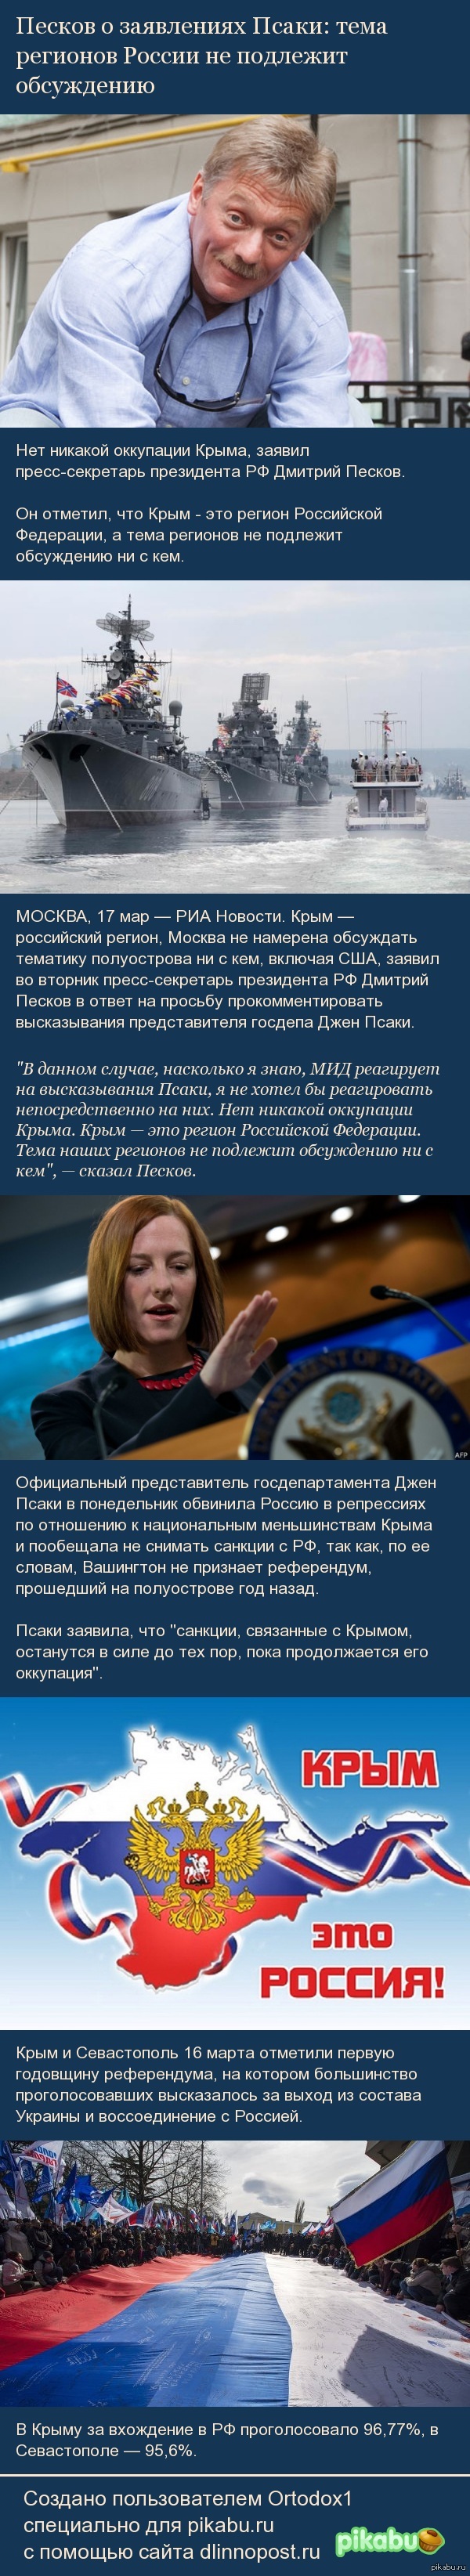           http://ria.ru/politics/20150317/1052954004.html